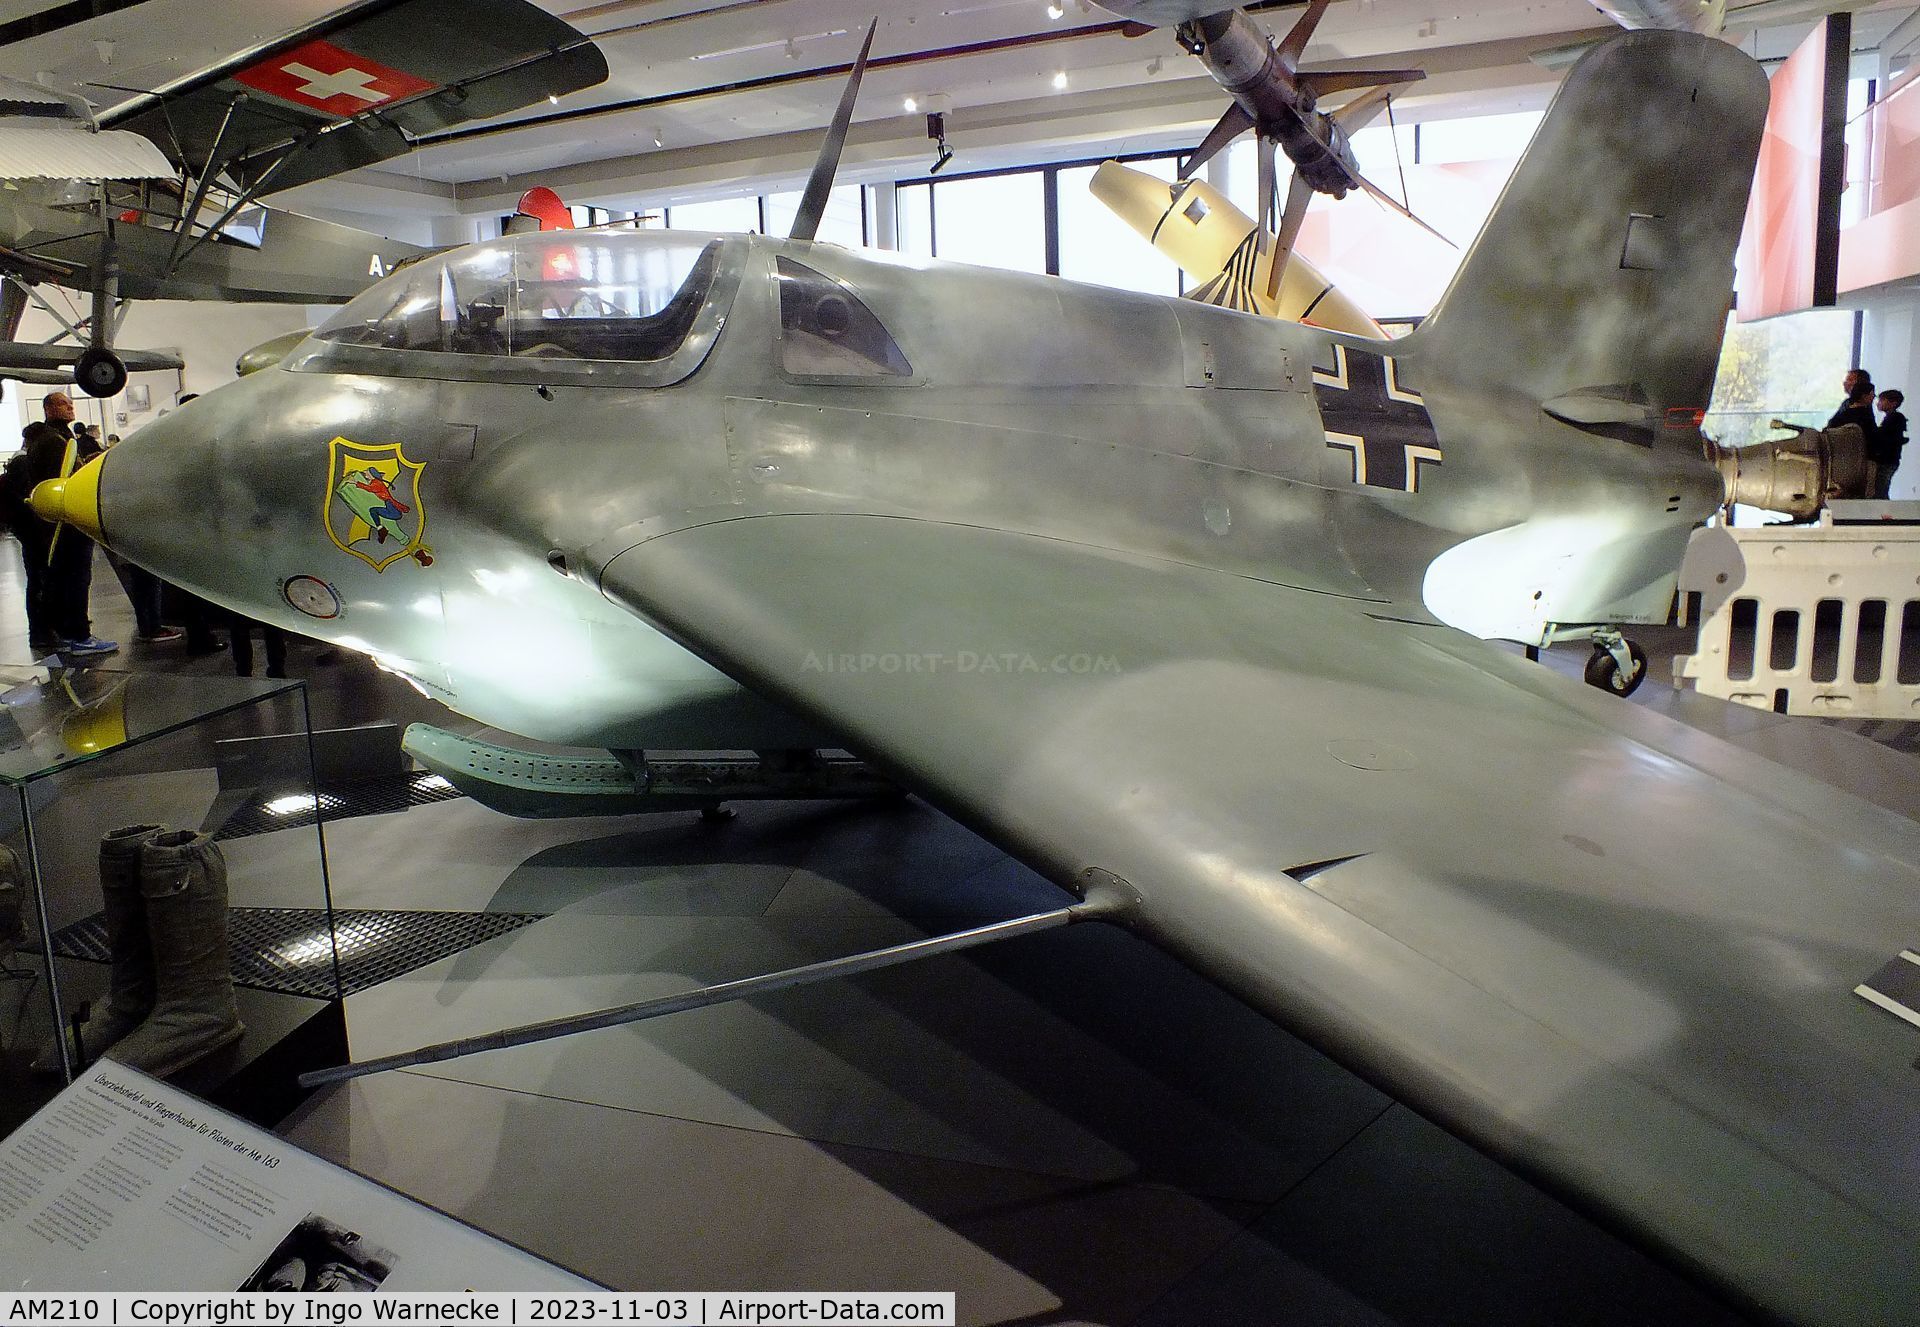 AM210, Messerschmitt Me-163B-1A Komet C/N 20370, Messerschmitt Me 163B-1A Komet at Deutsches Museum, München (Munich)